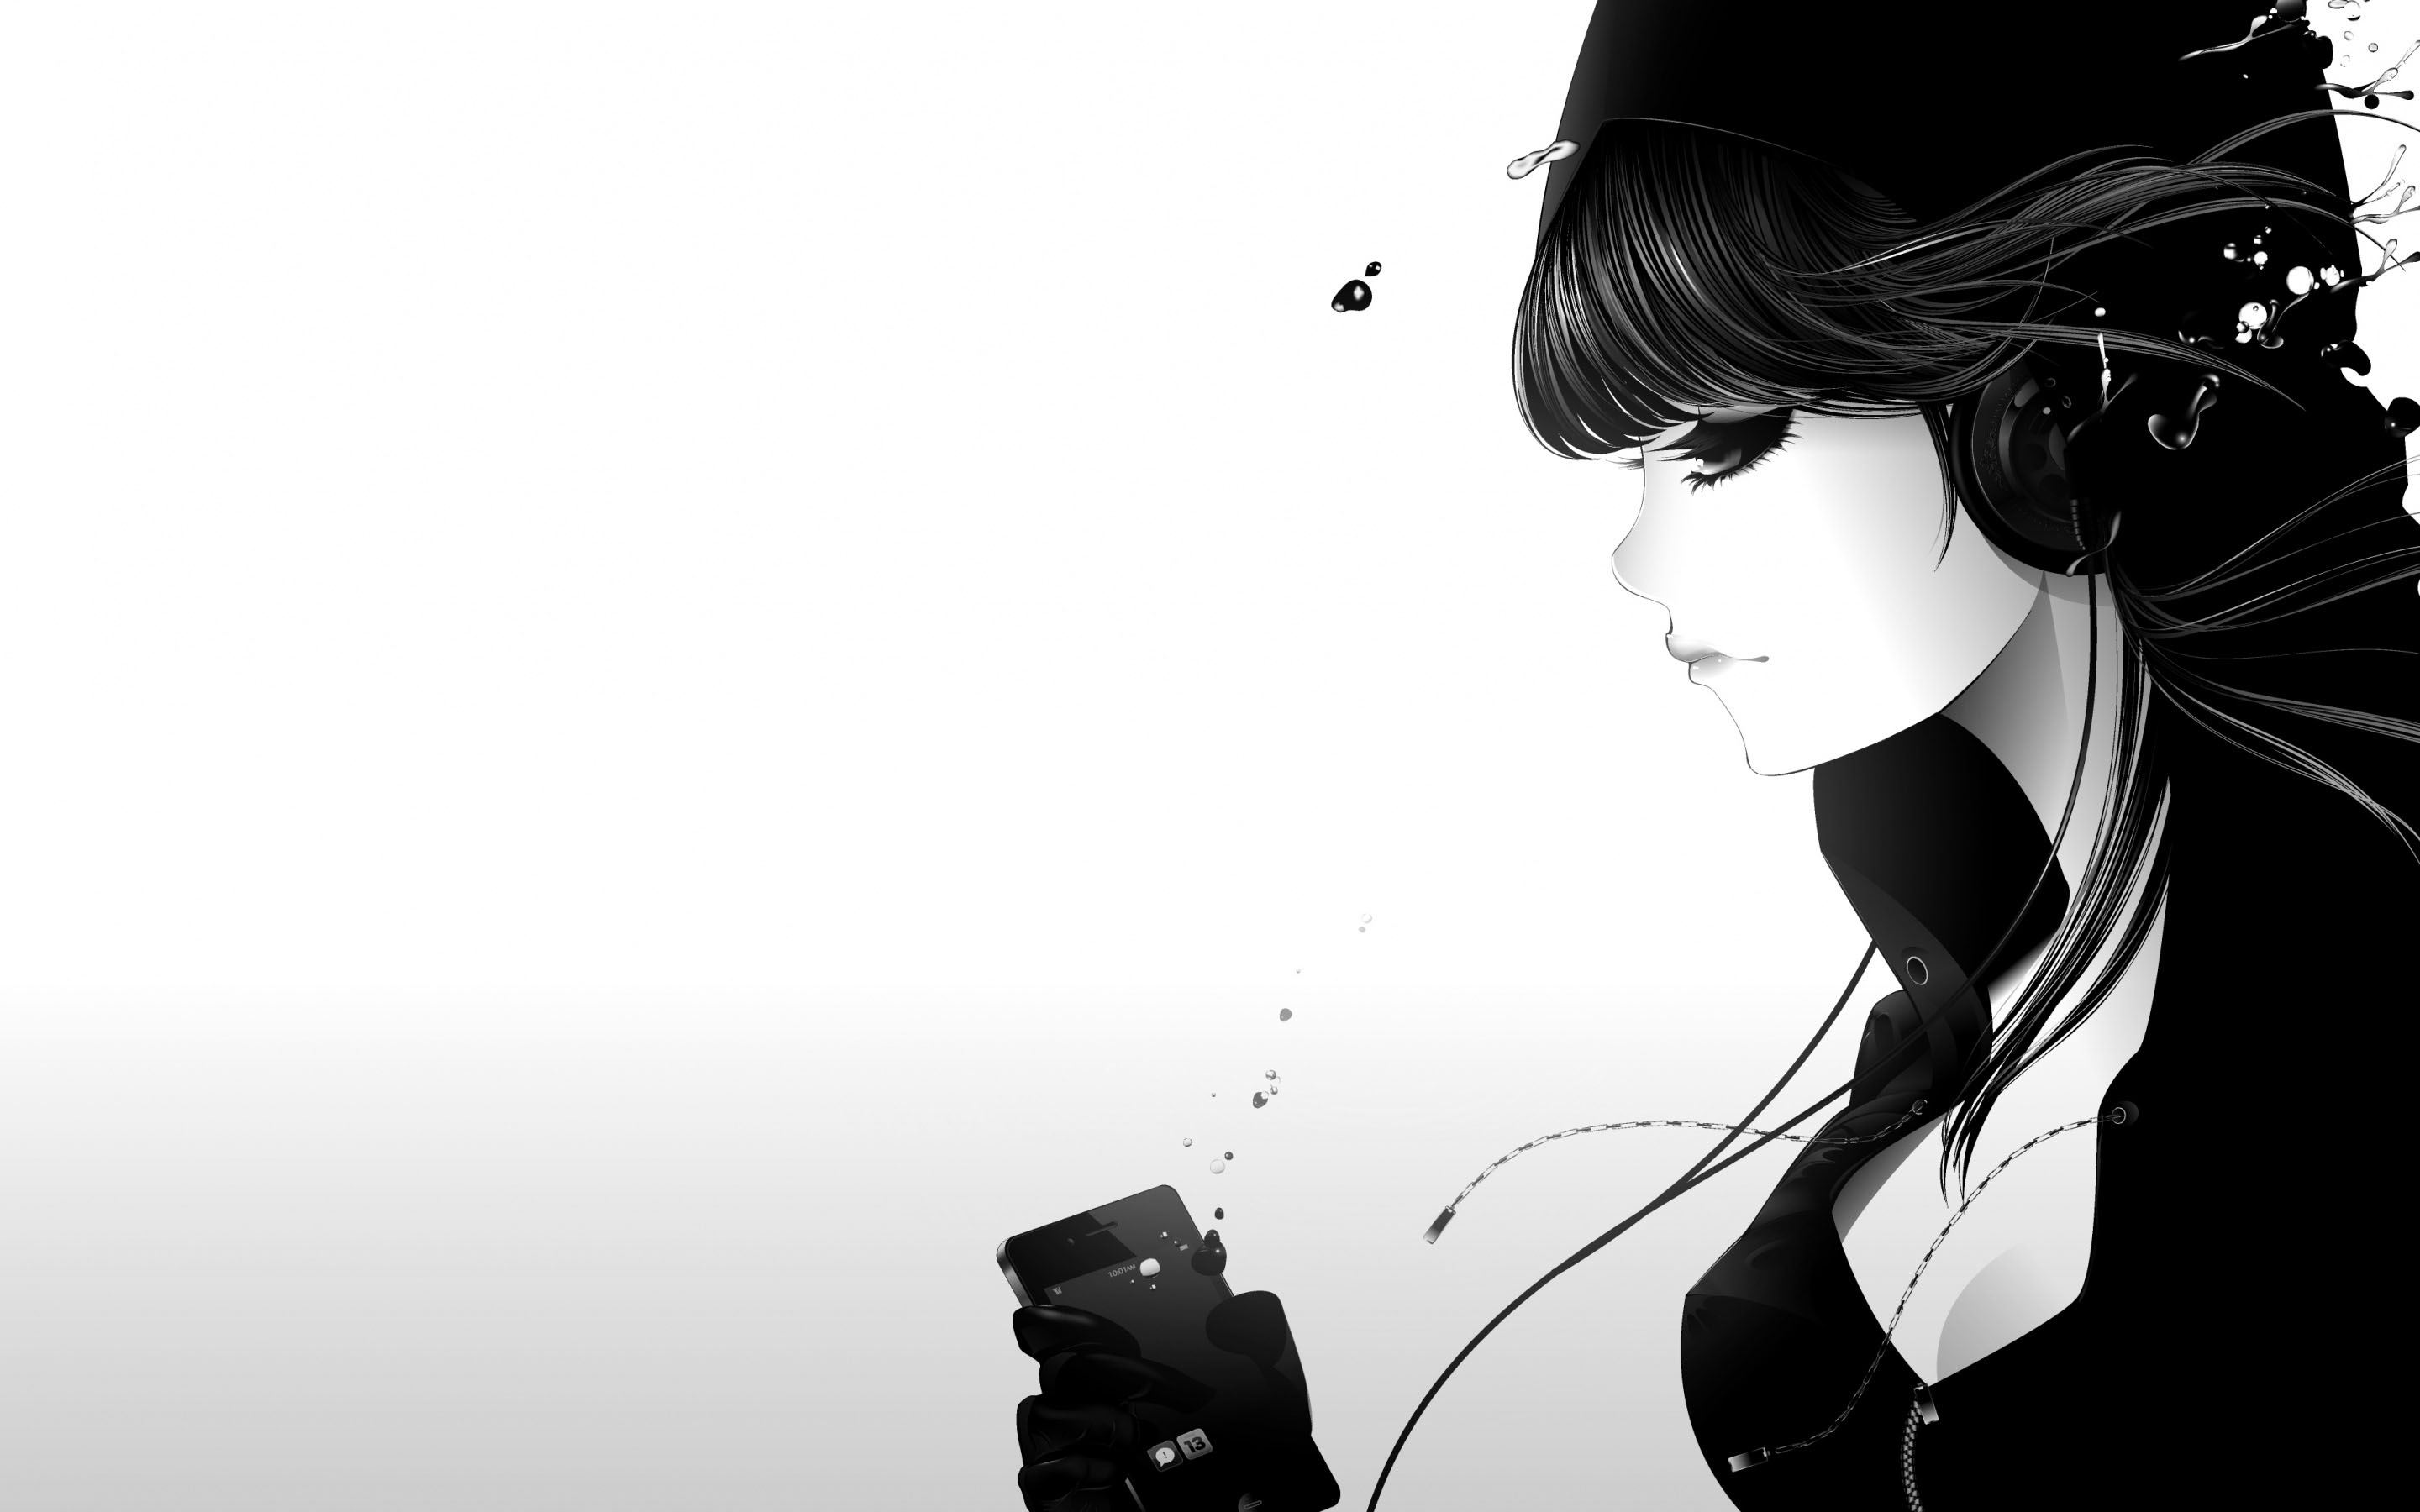 Anime Girl Listening Music-Wallpaper by DarkS337 on DeviantArt